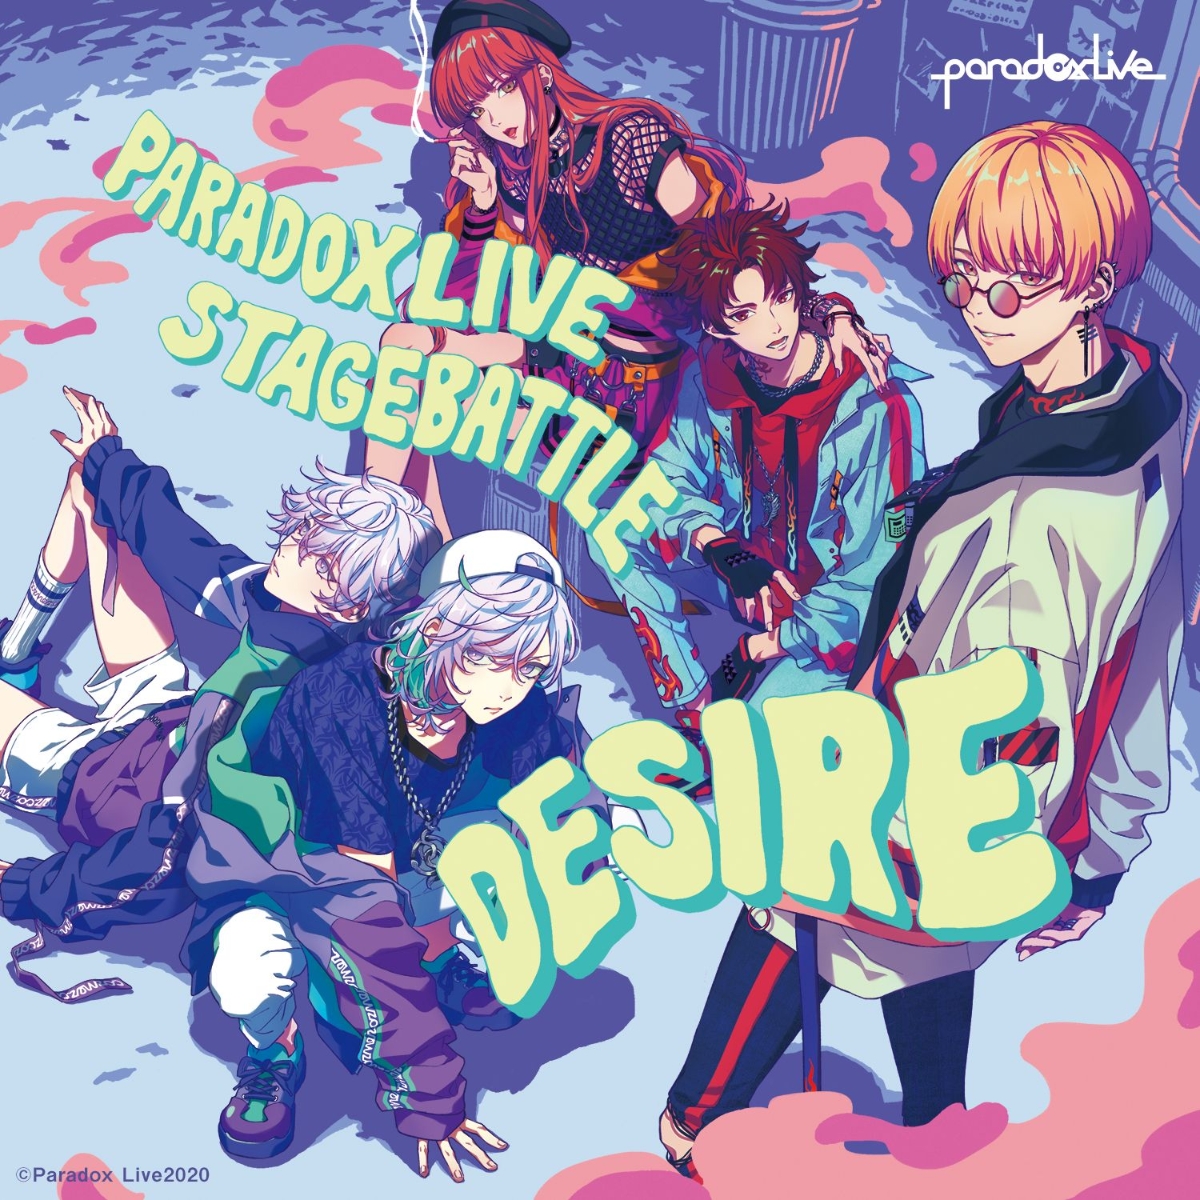 楽天ブックス: Paradox Live Stage Battle ”DESIRE” - BAE×cozmez 